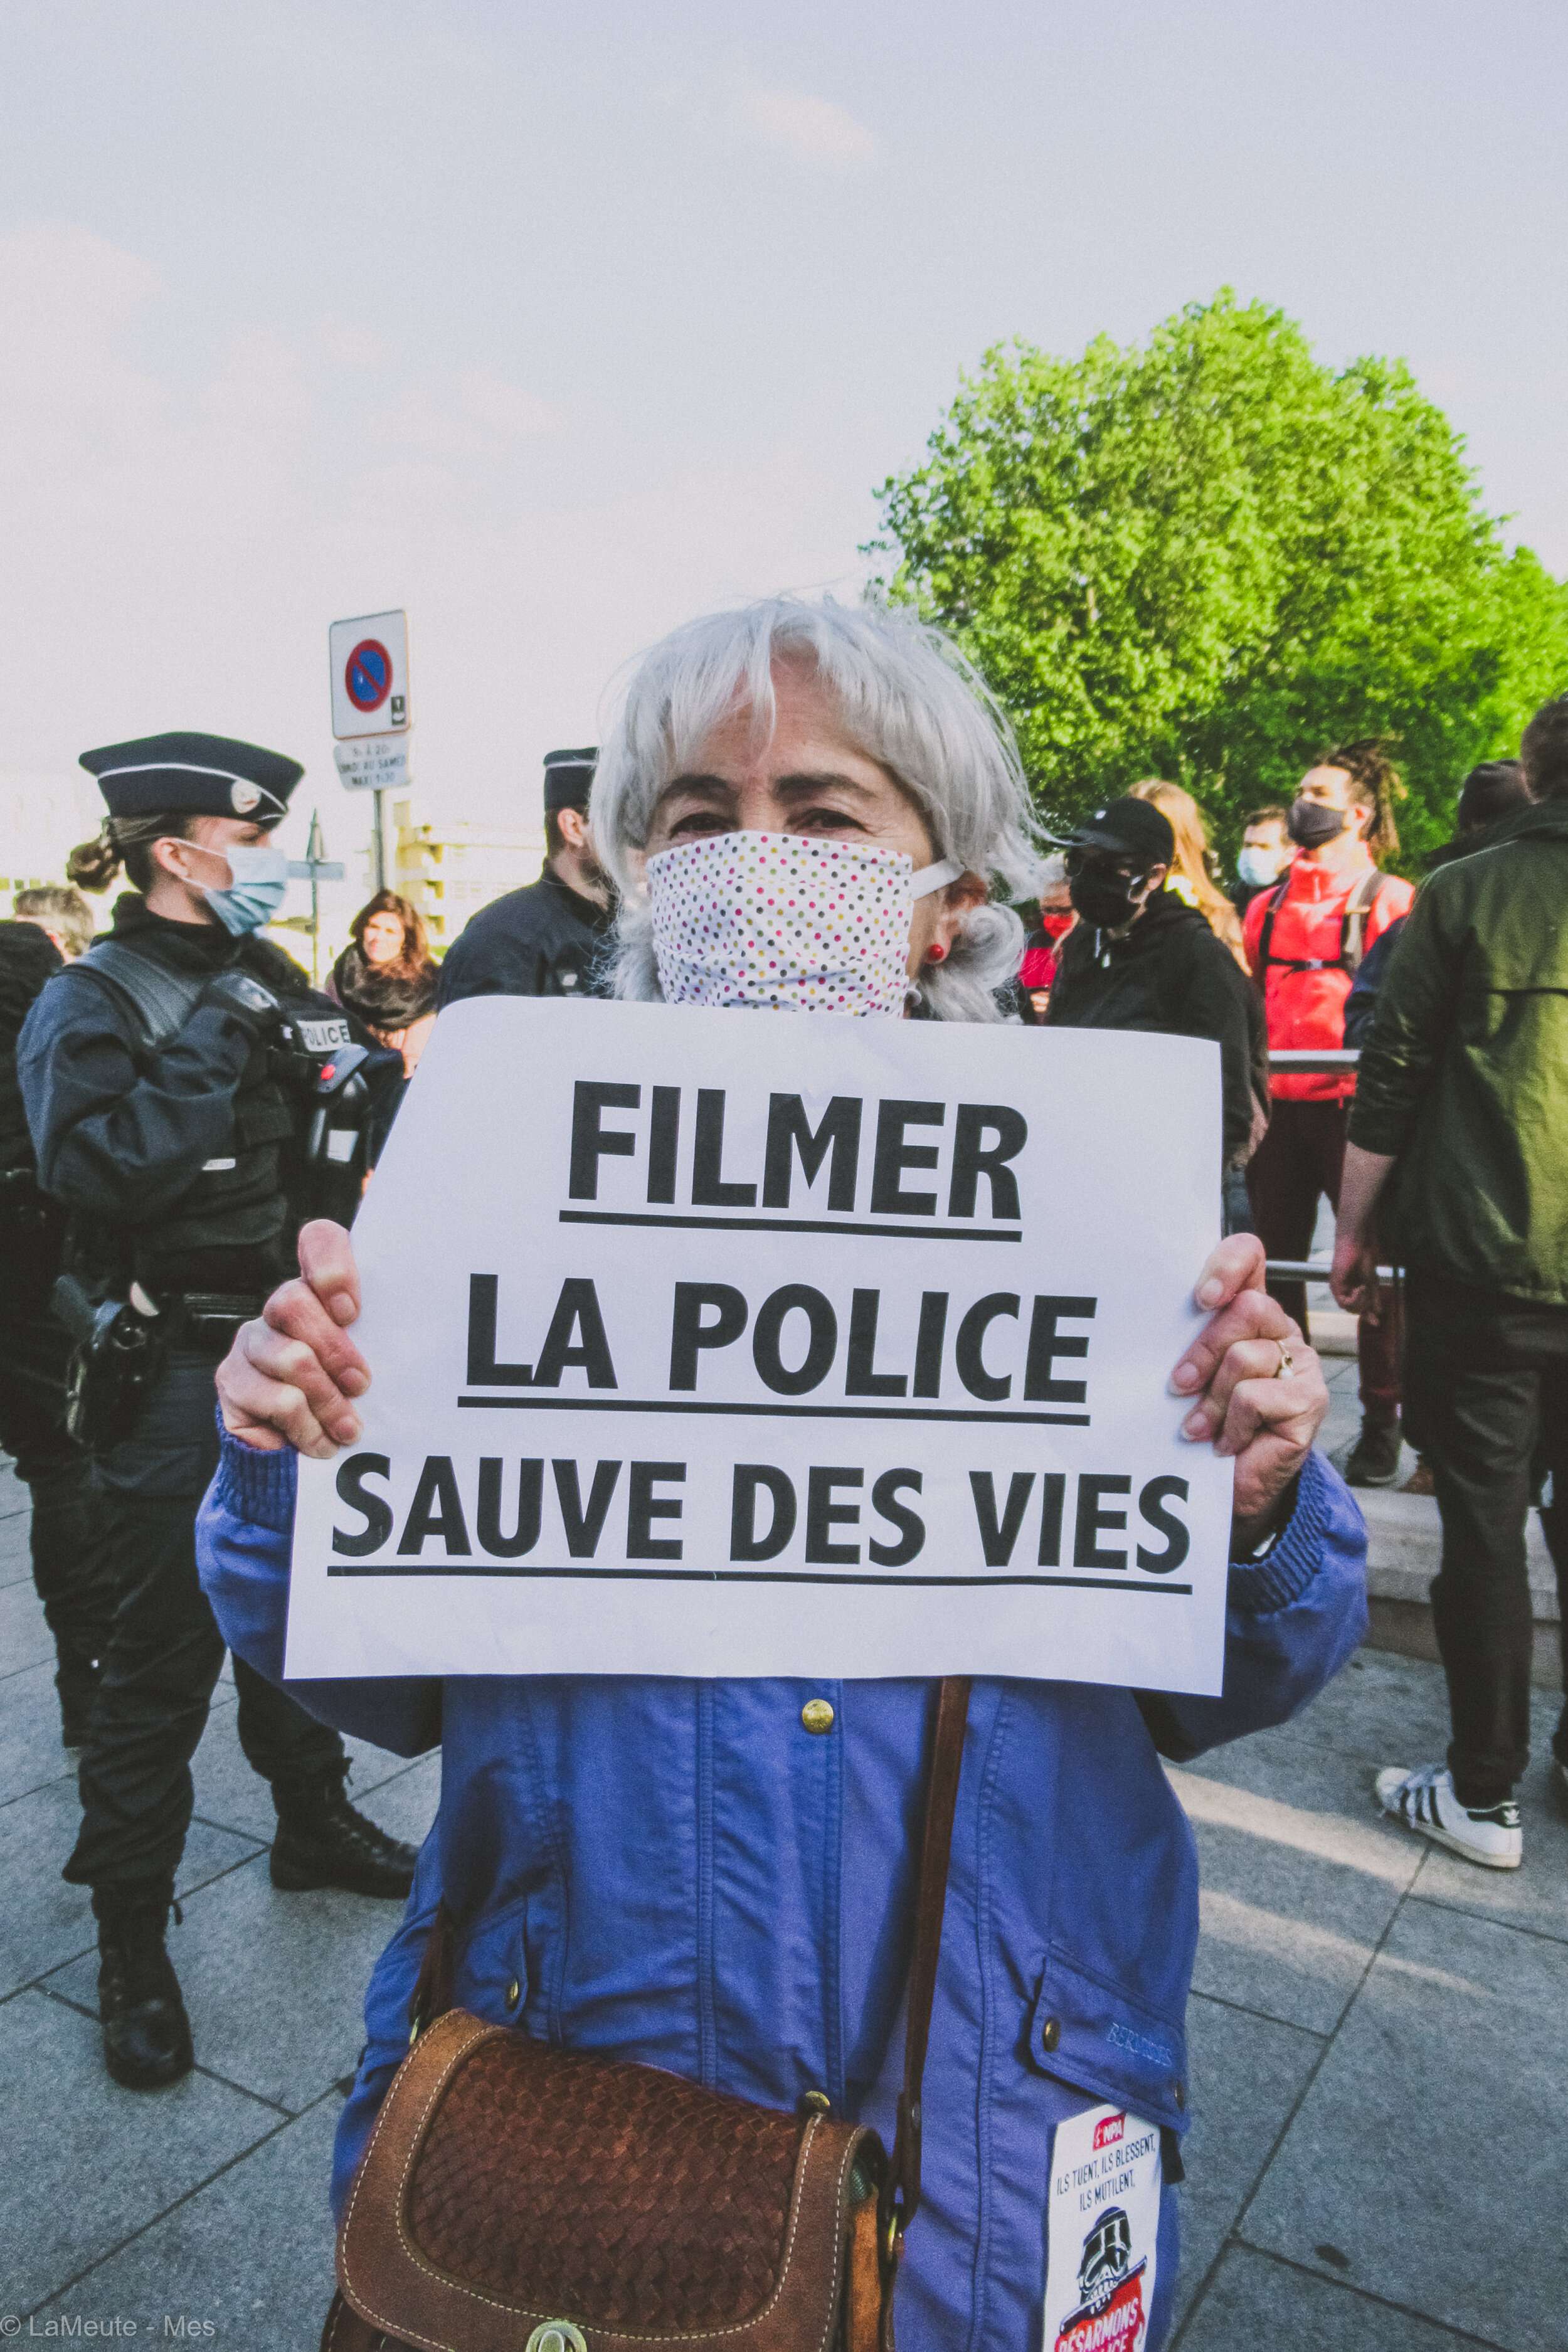     Le réflexe d’un habitant de l’Ile Saint Denis a permis de dévoiler l’agression raciste de Samir, le 26 avril dernier . ©LaMeute - Mes   